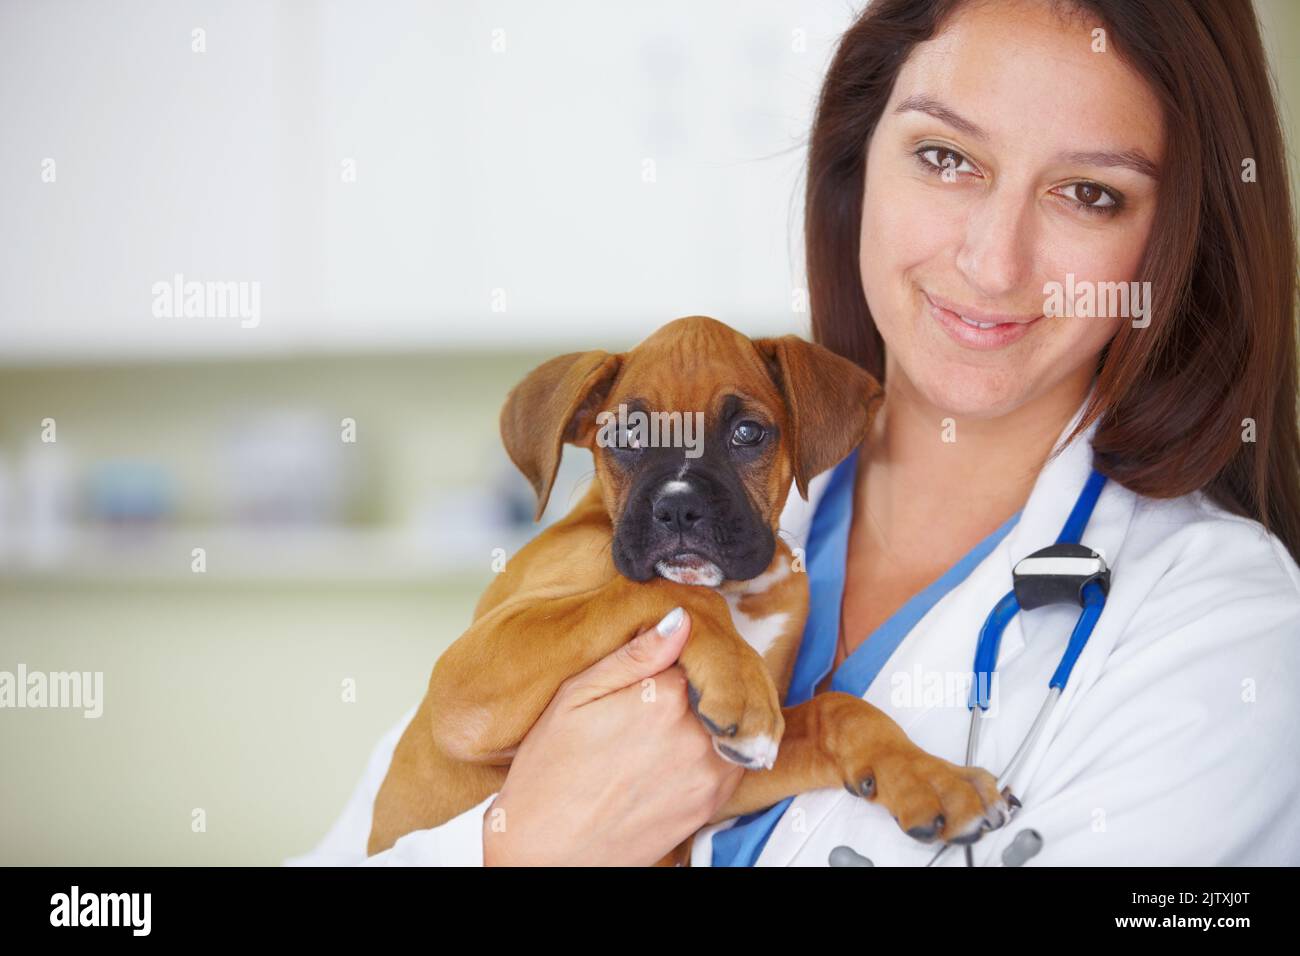 Ihr Welpe ist wieder gesund. Porträt eines hübschen lächelnden Tierarztes, der einen Welpen hält und die Kamera anlächelt. Stockfoto